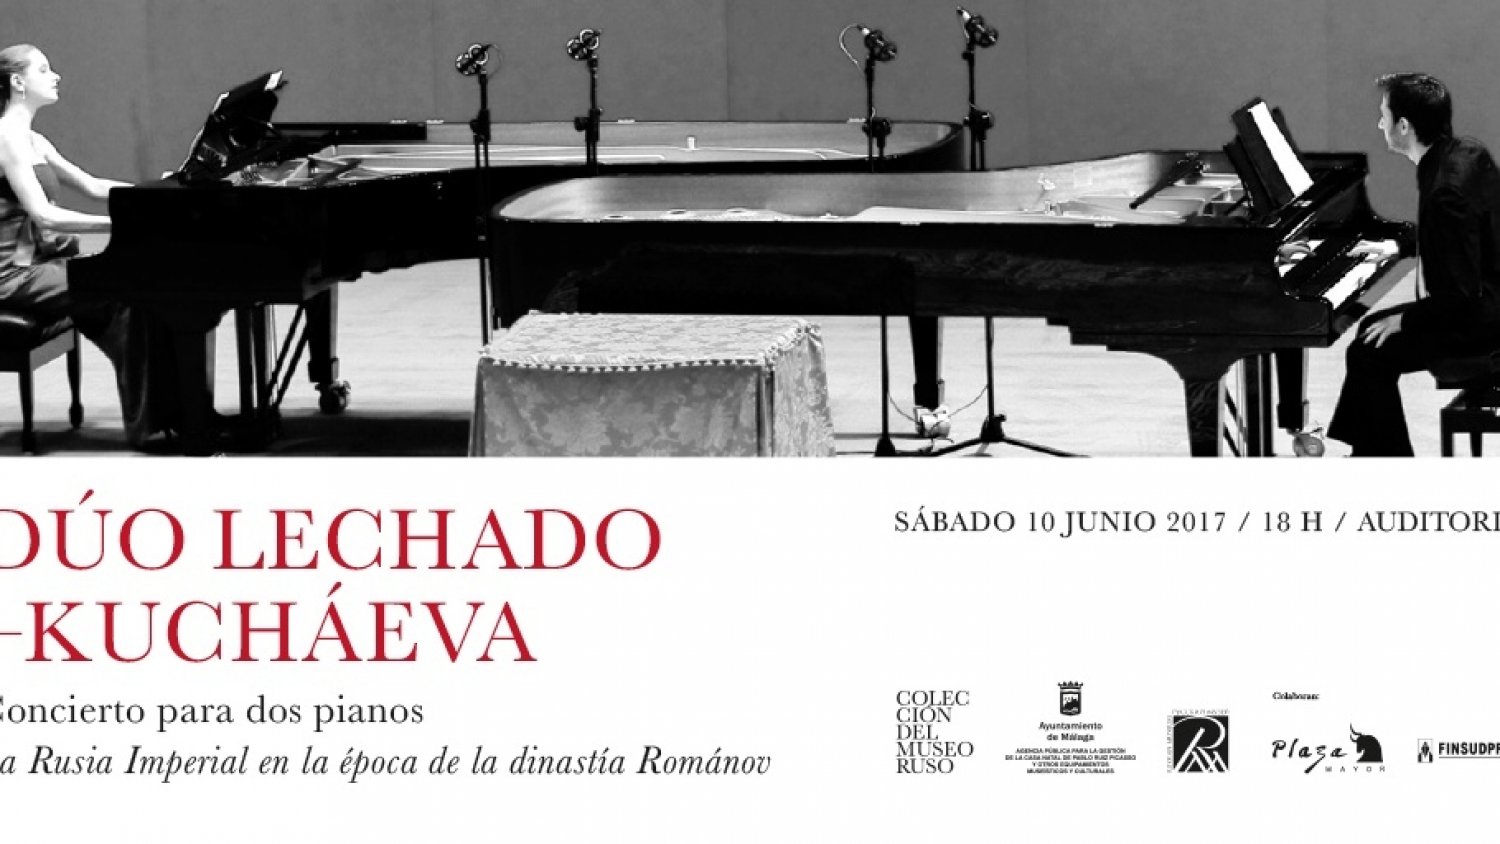 La sensibilidad y riqueza musical del dúo Lechado-Kuchaéva llegan al auditorio de la Colección del Museo Ruso